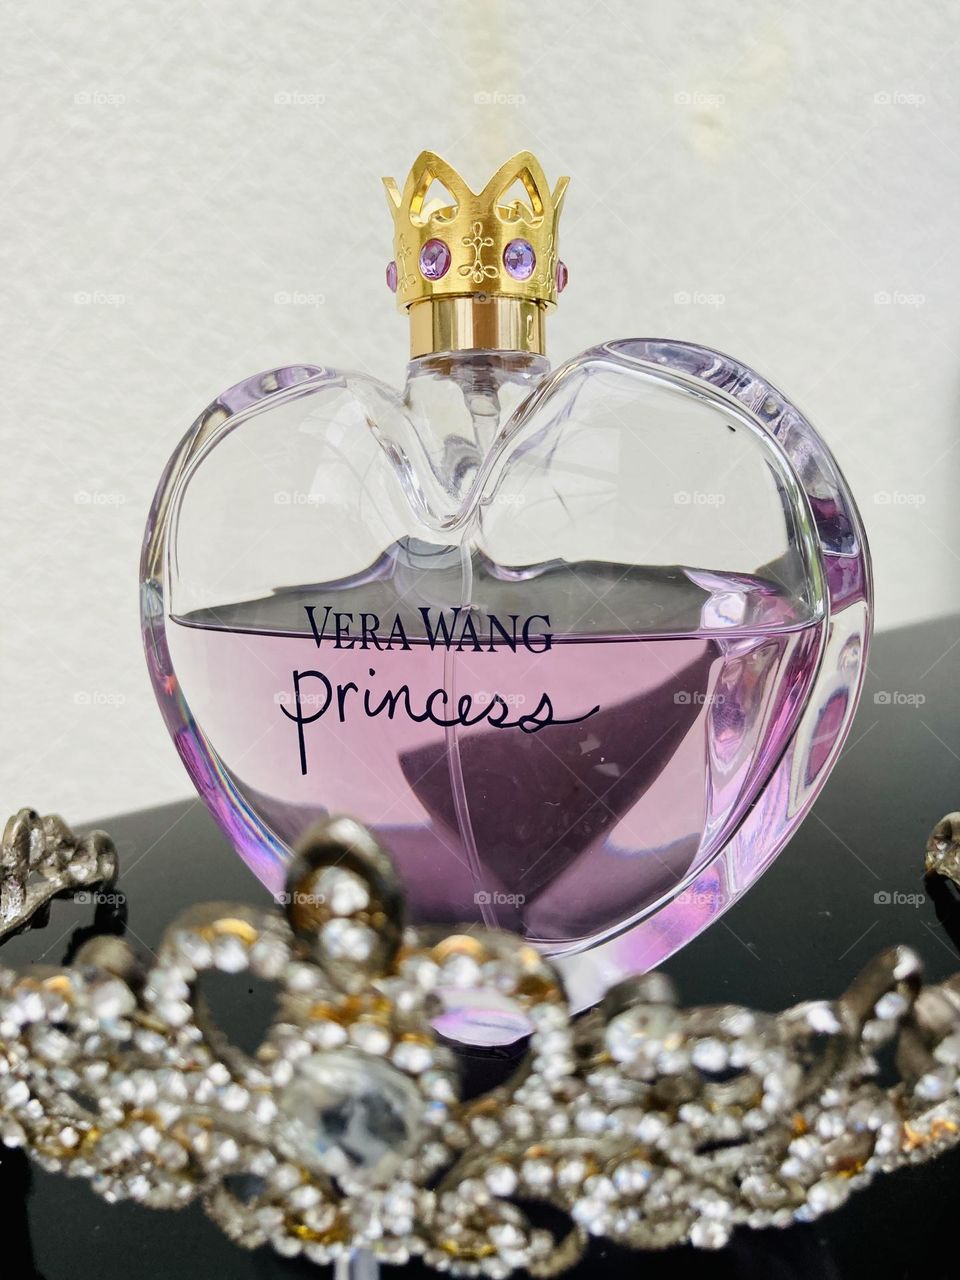 Vera Wang Princess perfume product photography